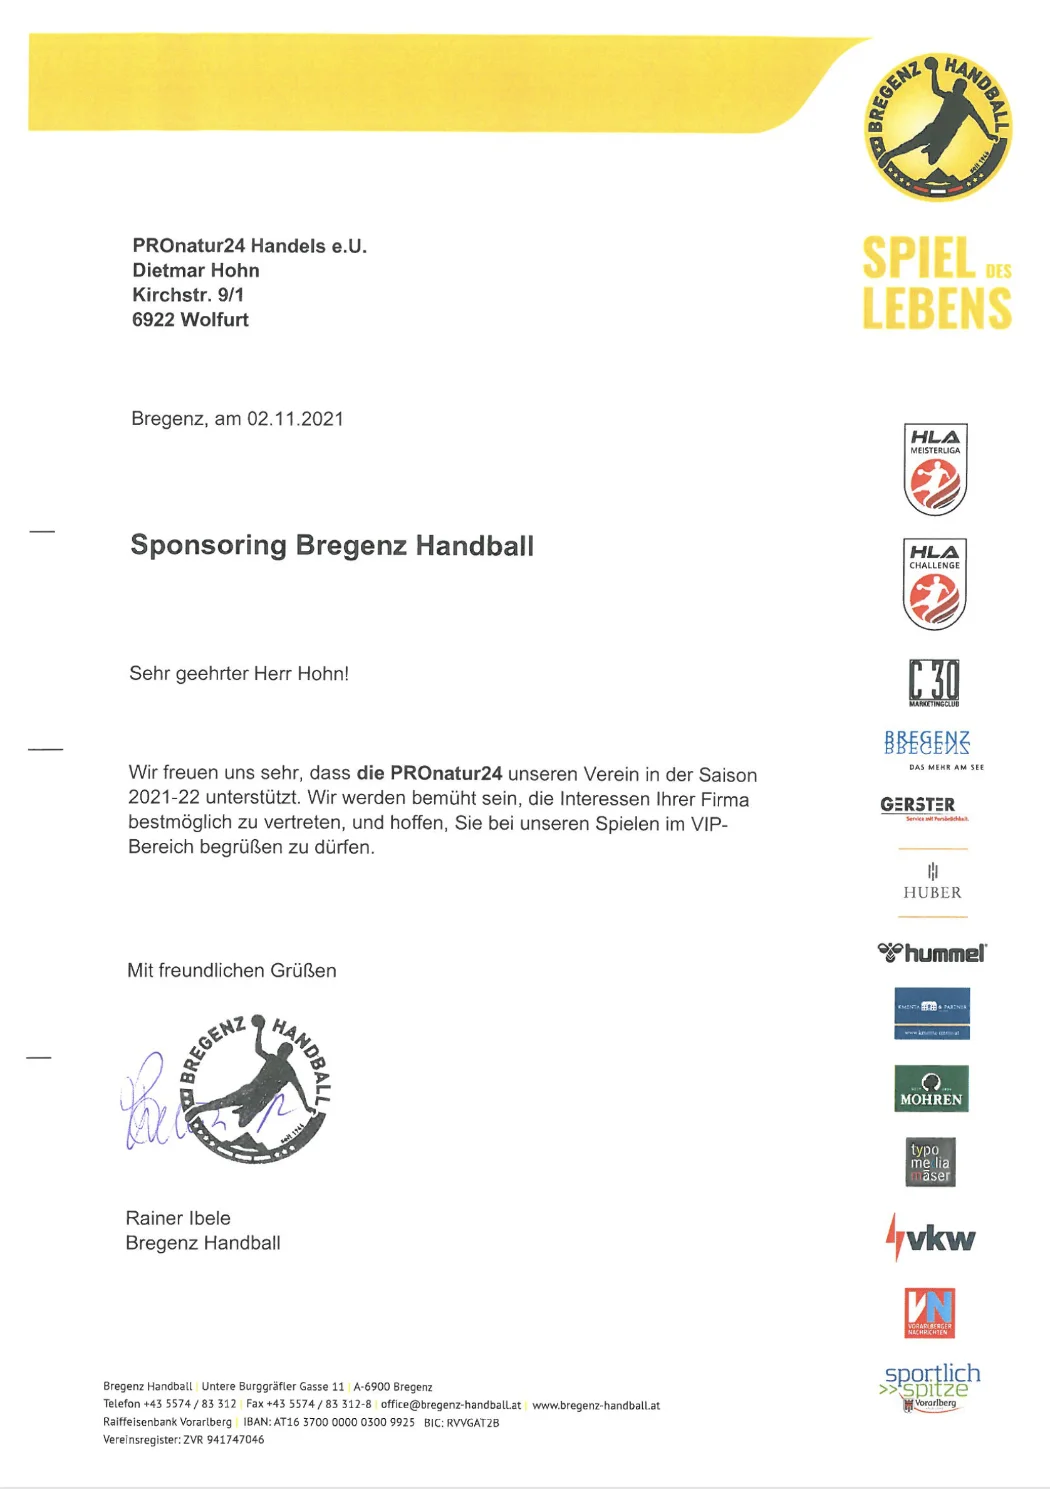 Sponsoring Bregenz Handball 2021/2022